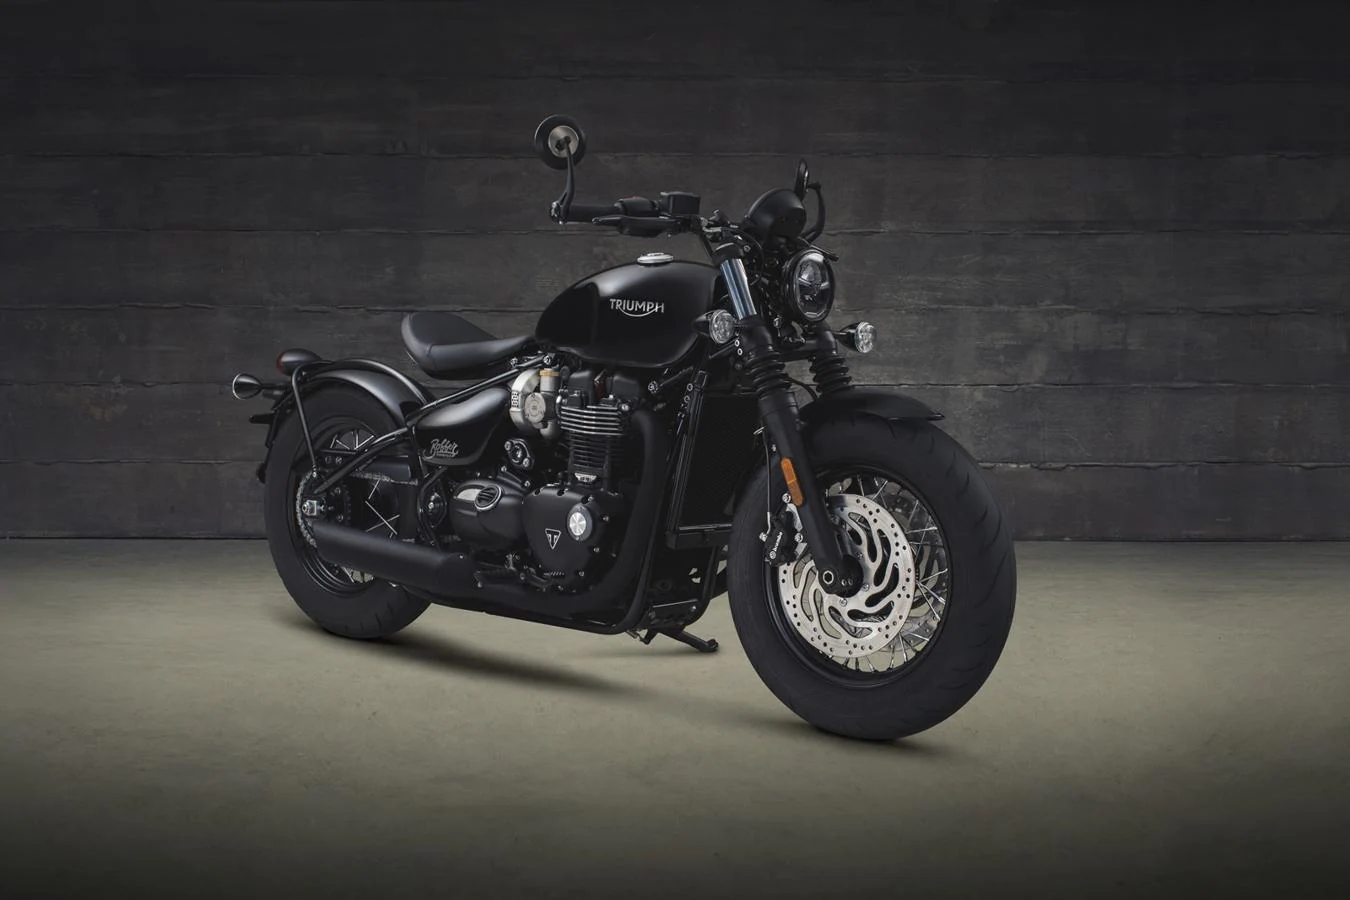 Triumph Bonneville Bobber Black. Su diseño está inspirado en las motocicletas de los años 40 y se han eliminado prácticamente todos los cromados y brillos, por el color negro satinado